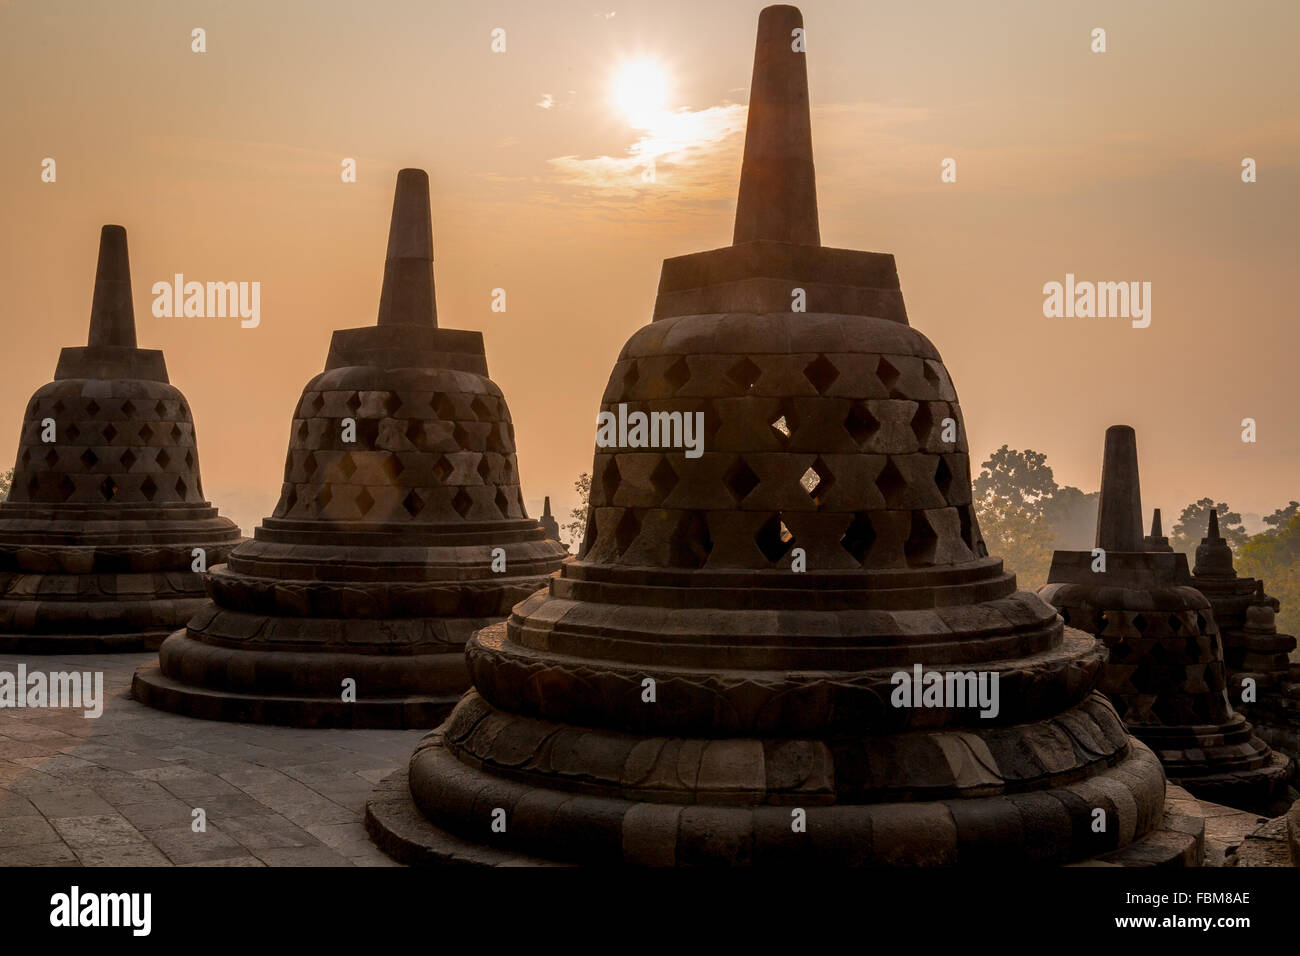 Las hermosas estupas del complejo del templo Borobudur, Yogyakarta, Indonesia. Borobudur es el templo budista más grande del mundo. Foto de stock